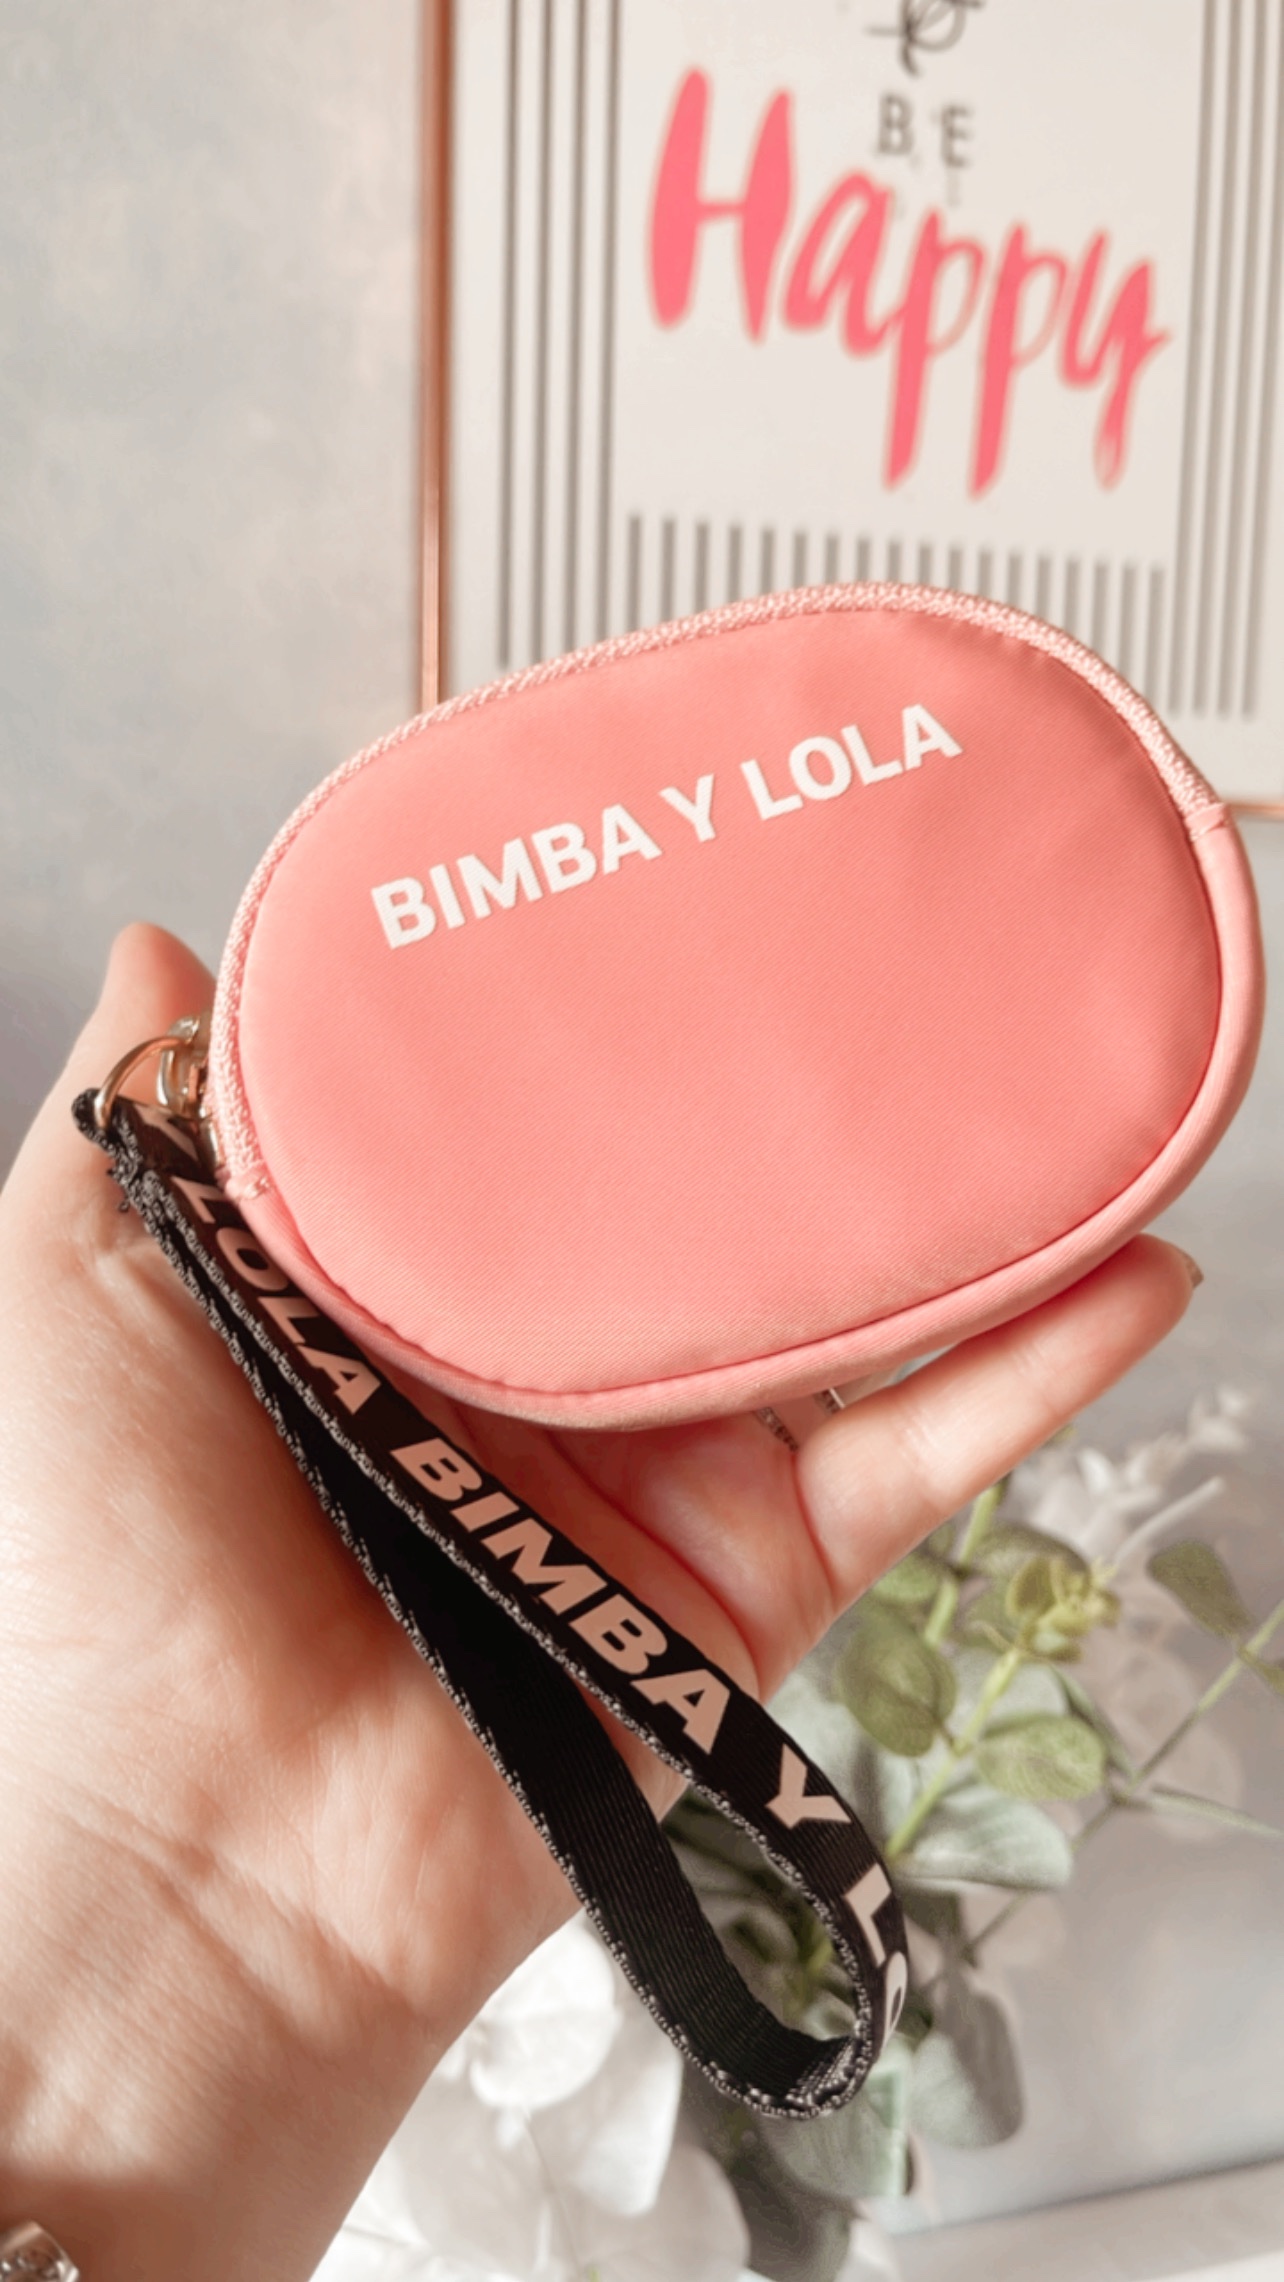 monederos : Bimba Y Lola vestidos de moda  Bimba Y Lola Argentina, Un gran  descuento en todos los Bimba Y Lola vestidos y Bimba Y Lola carteras.